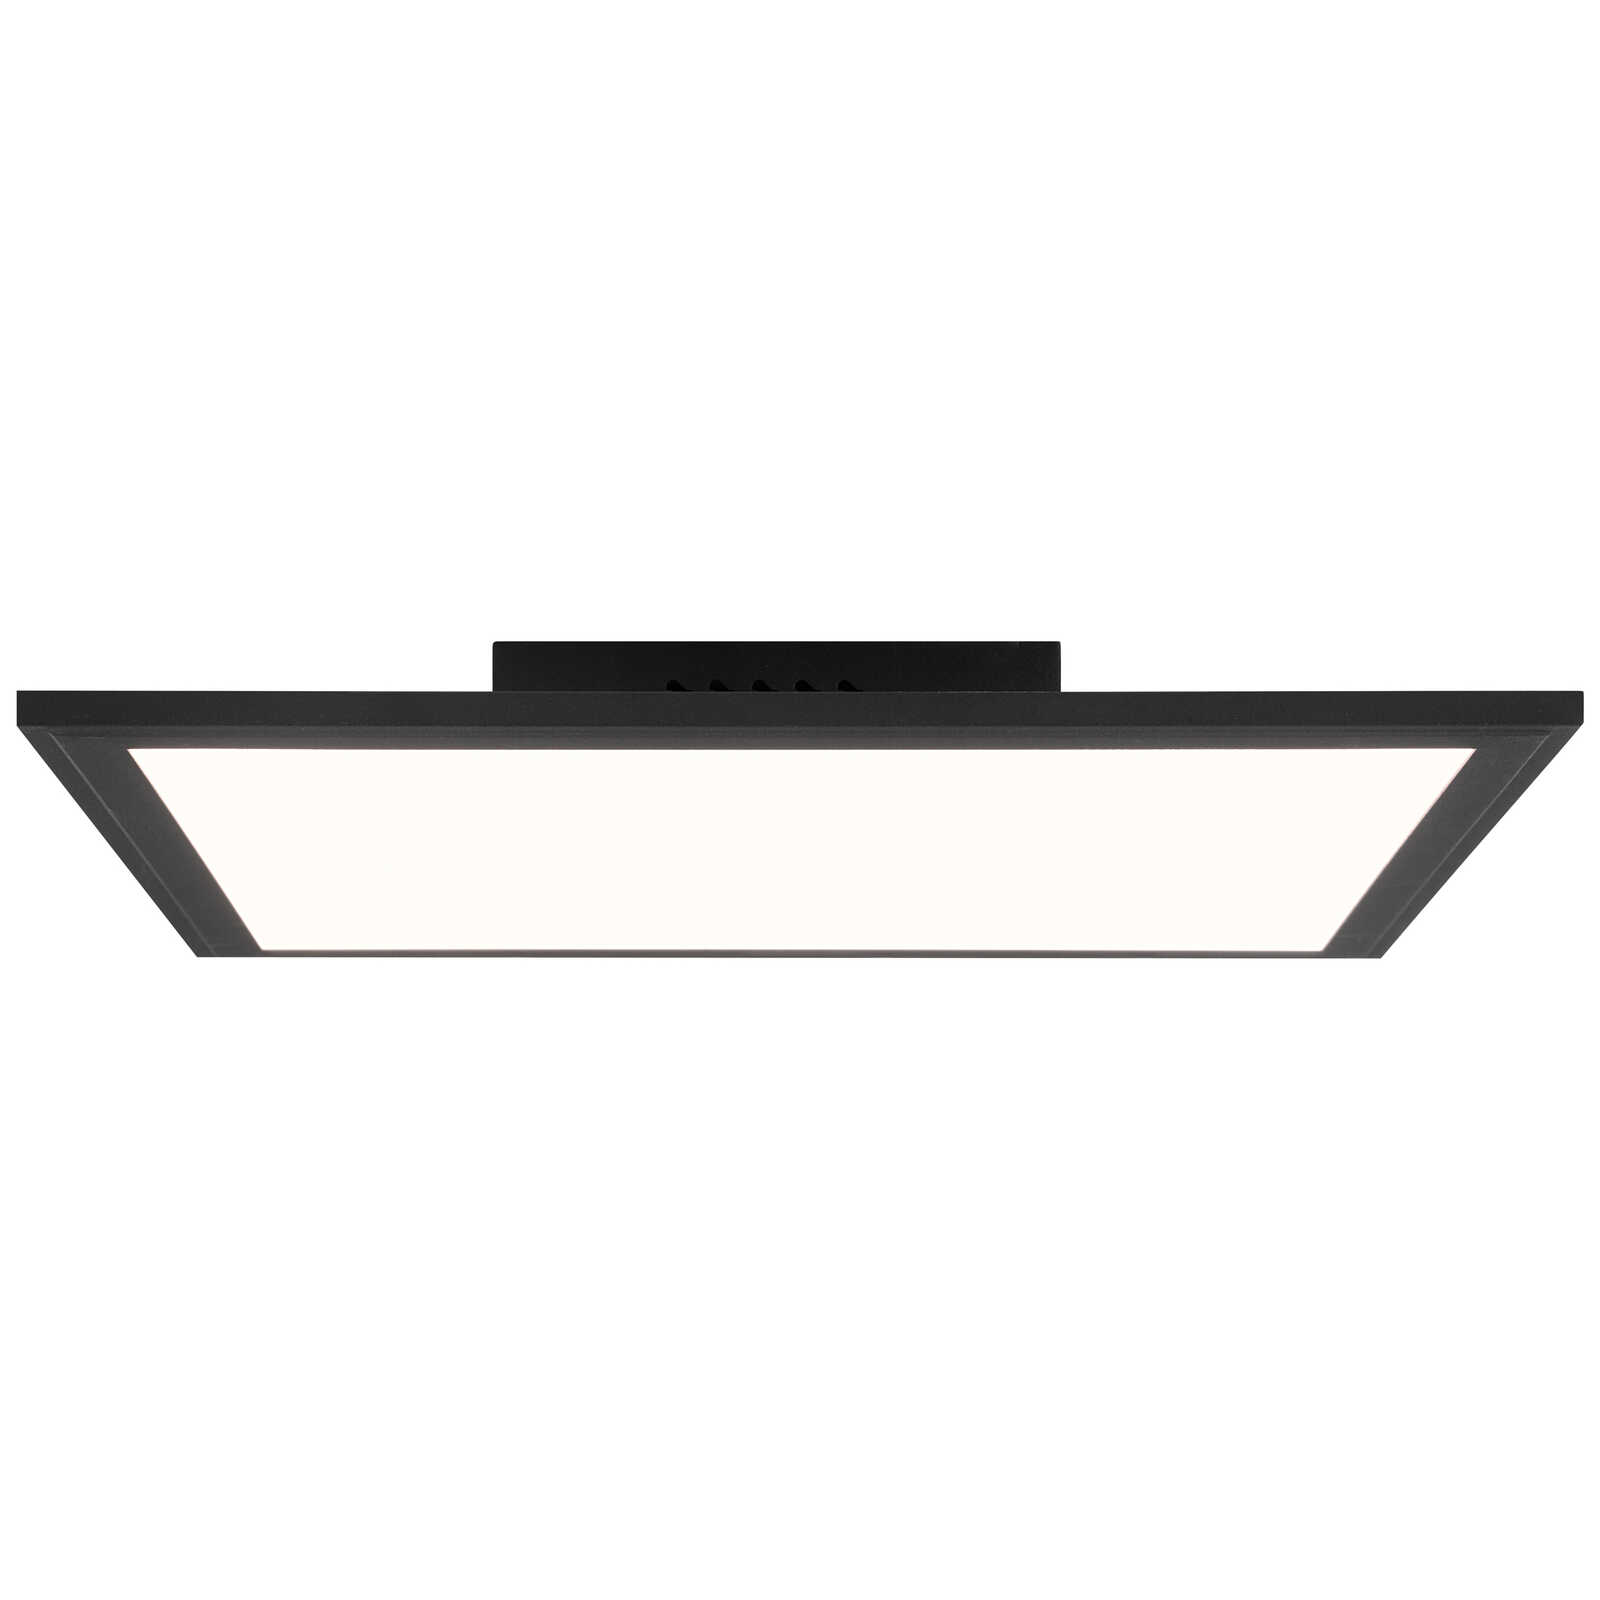             Plastic ceiling light - Aaron 2 - Black
        